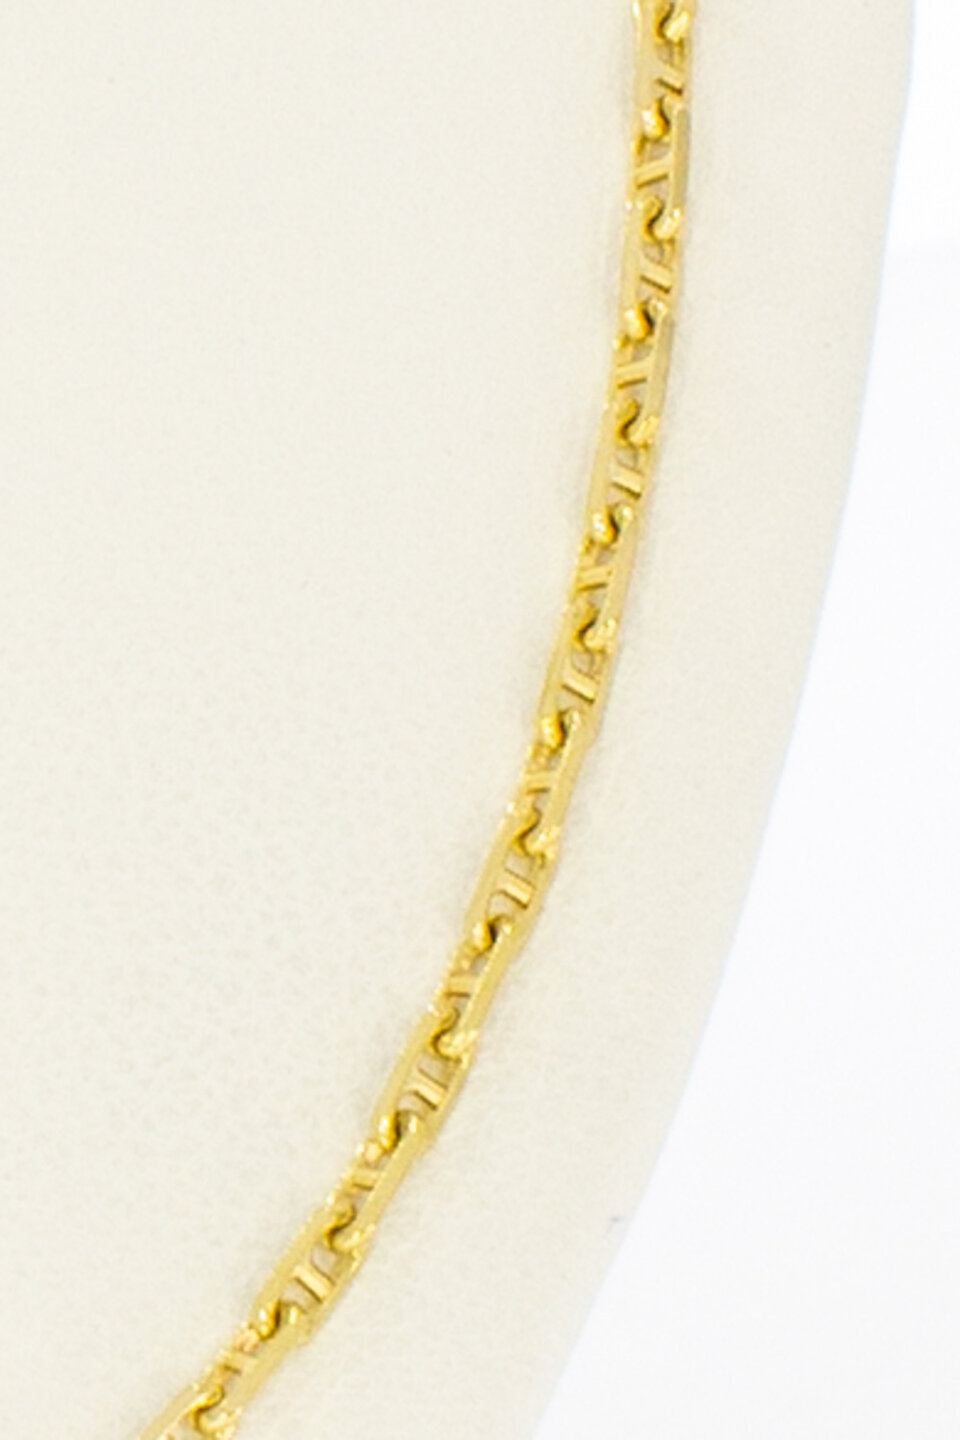 Anker ketting 18 karaat goud - 60,4 cm